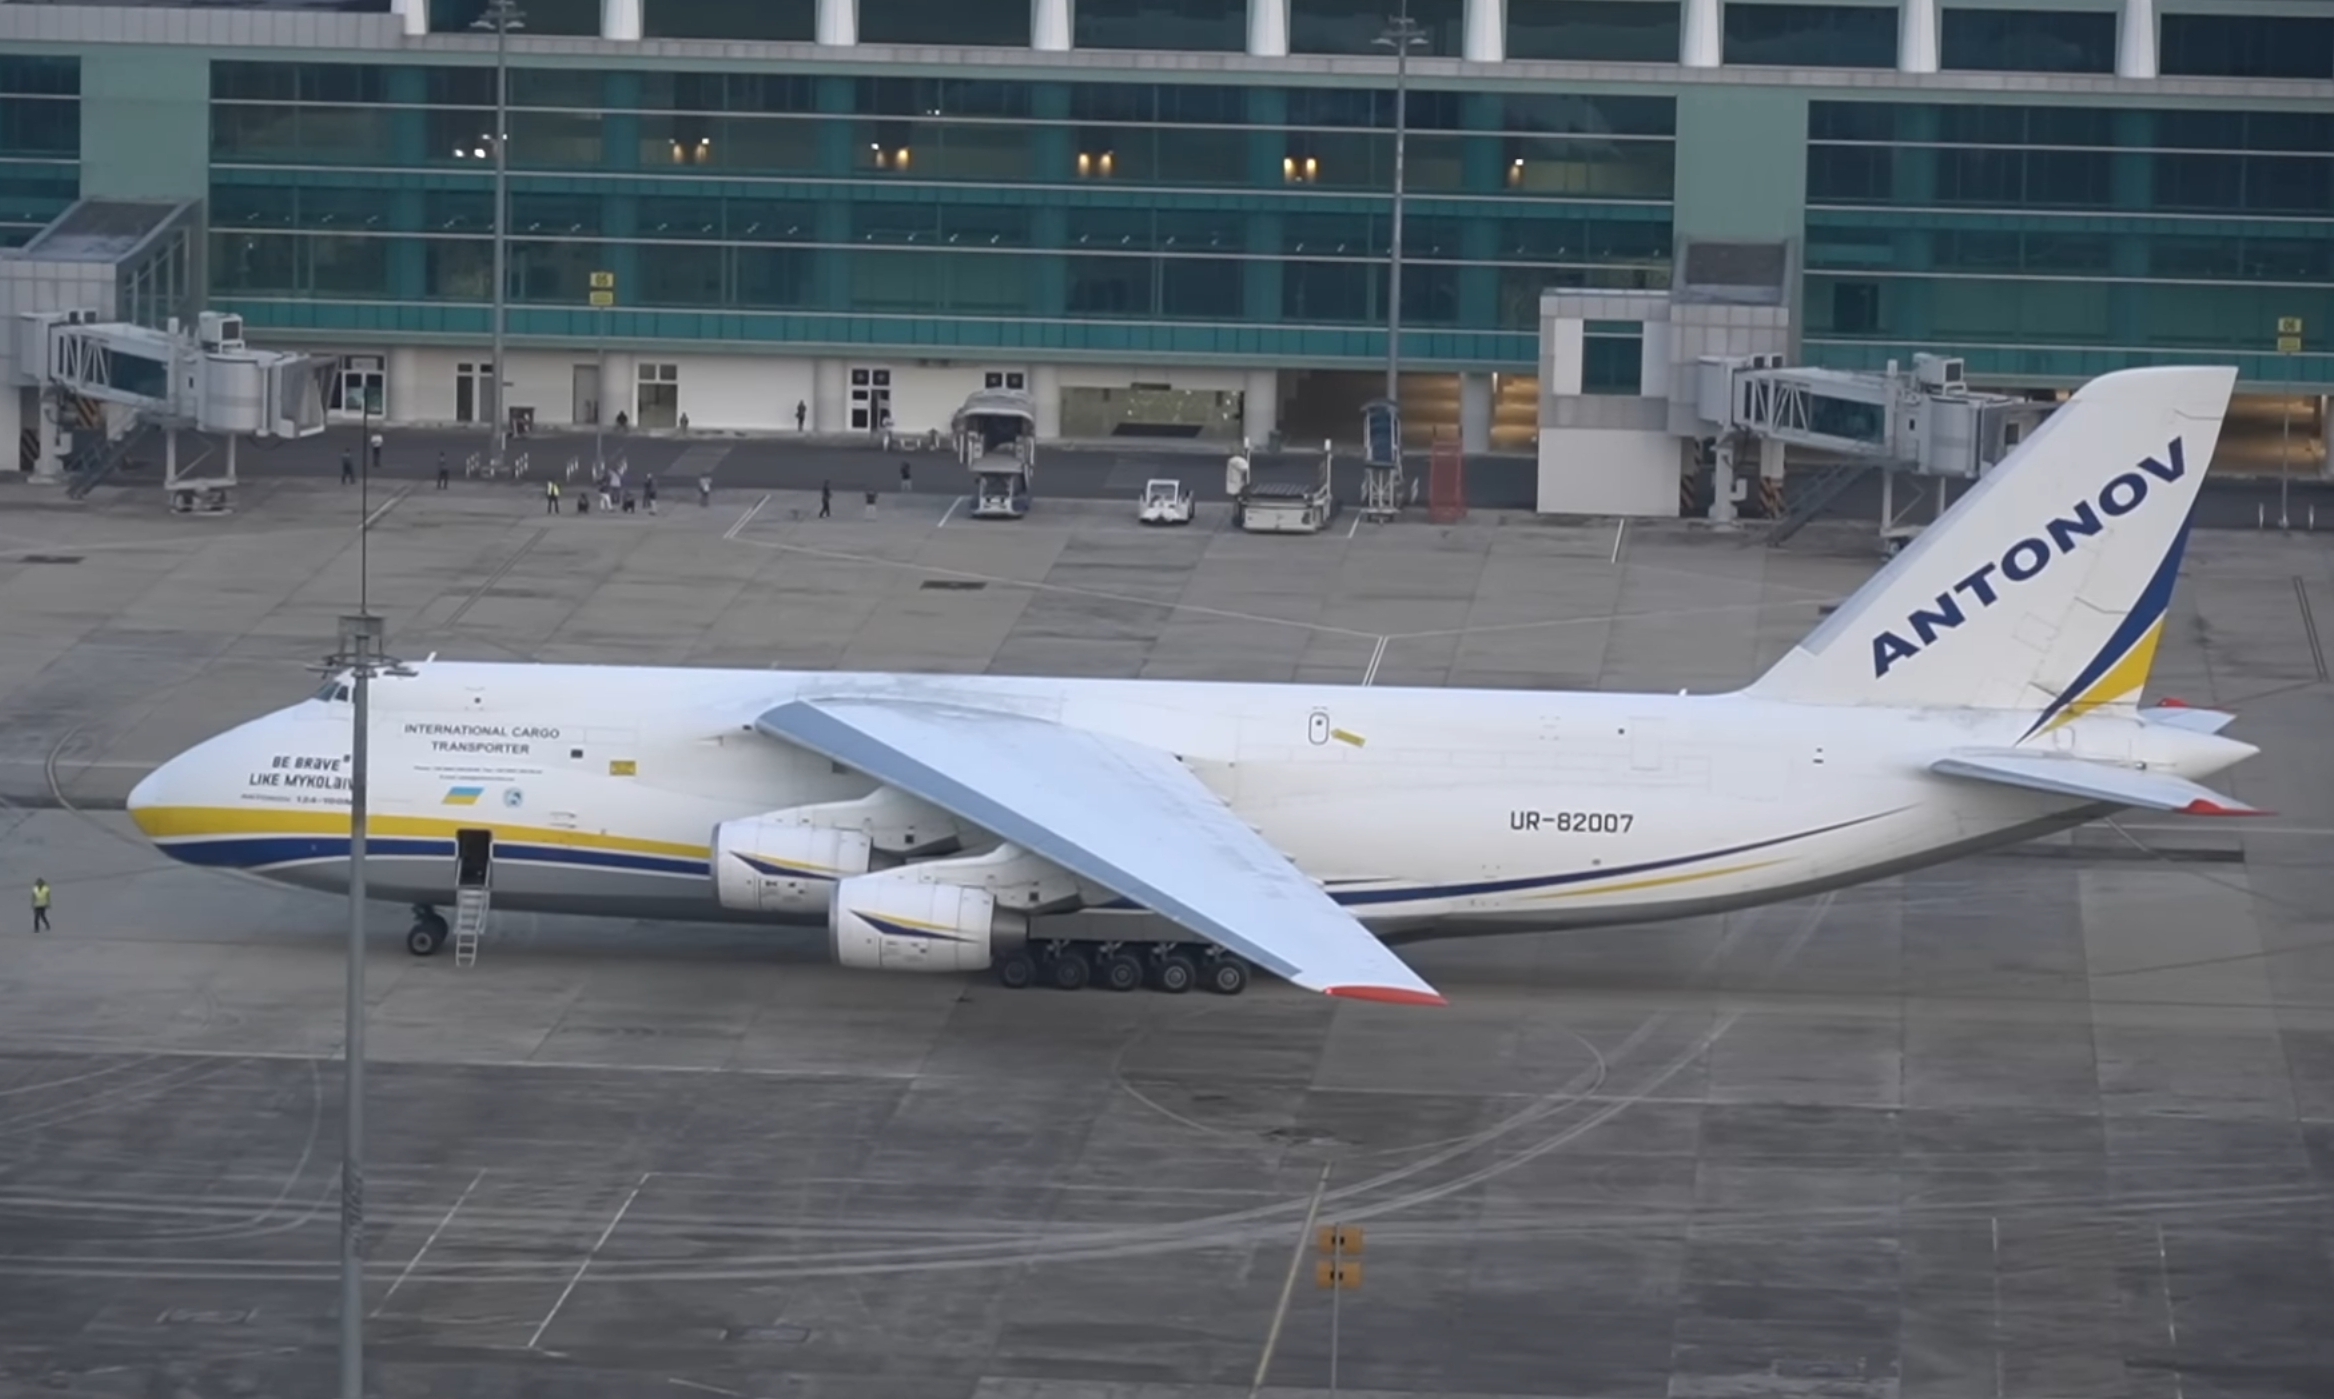 Tentang Pesawat Antonov AN-124 100 M Ruslan yang Mendarat di Bandara Kertajati, Pantas Saja Heboh!